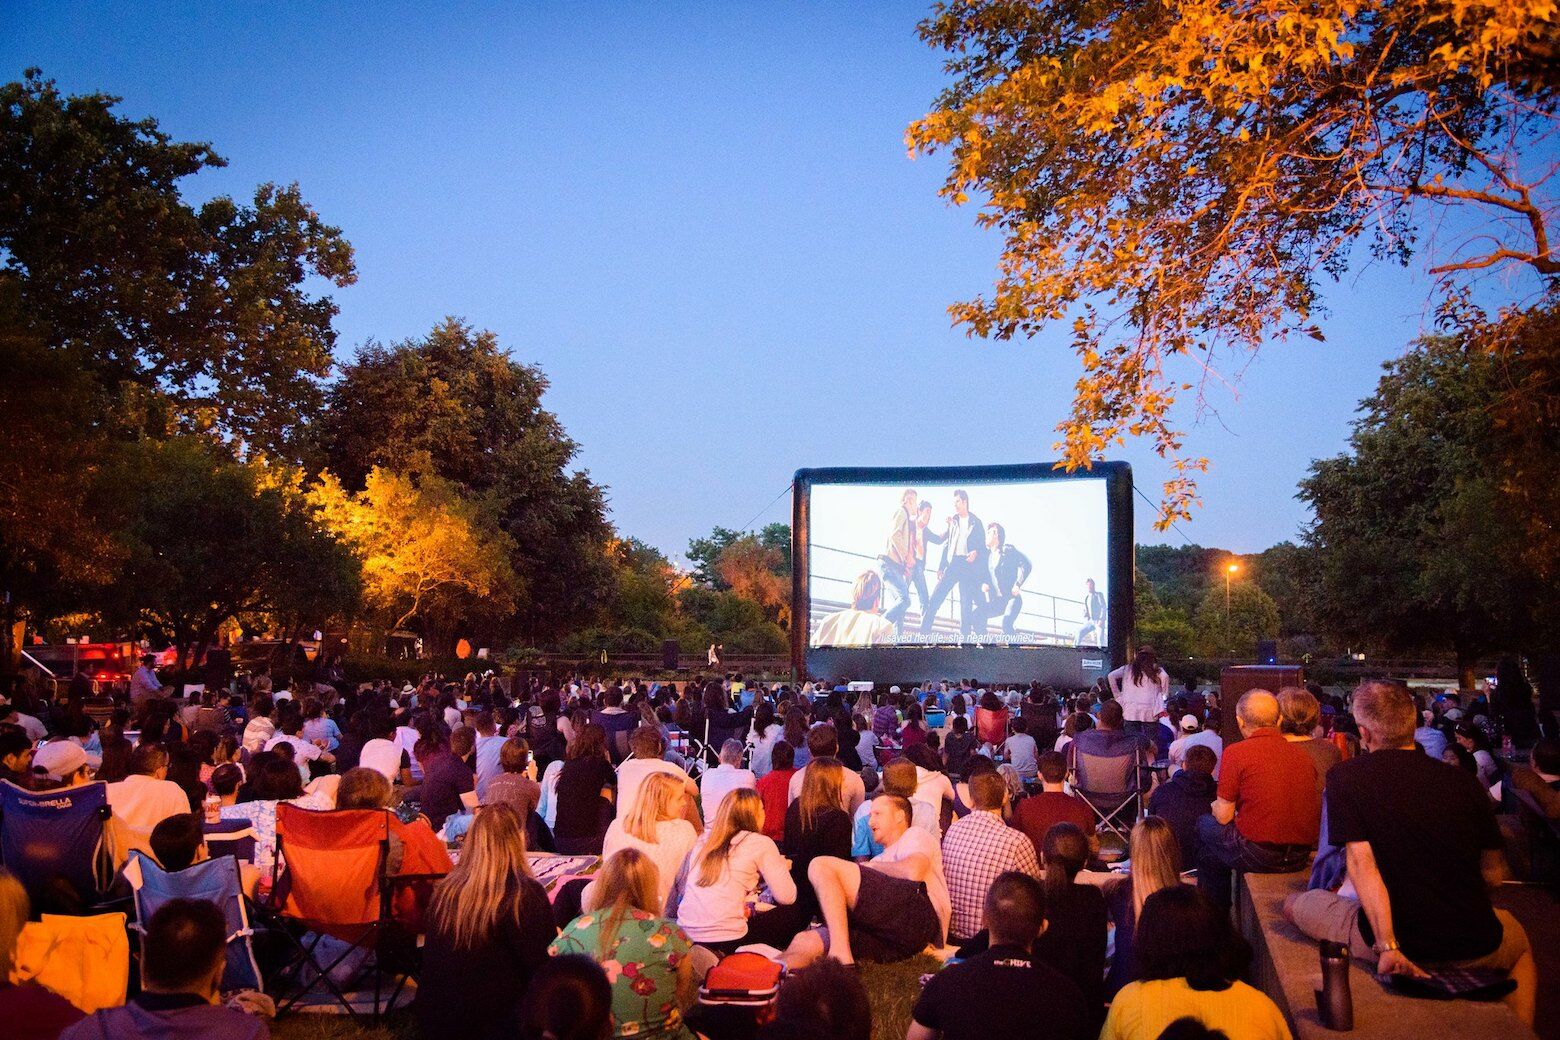 Rosslyn Cinema brings outdoor movie nights back to Virginia’s Gateway